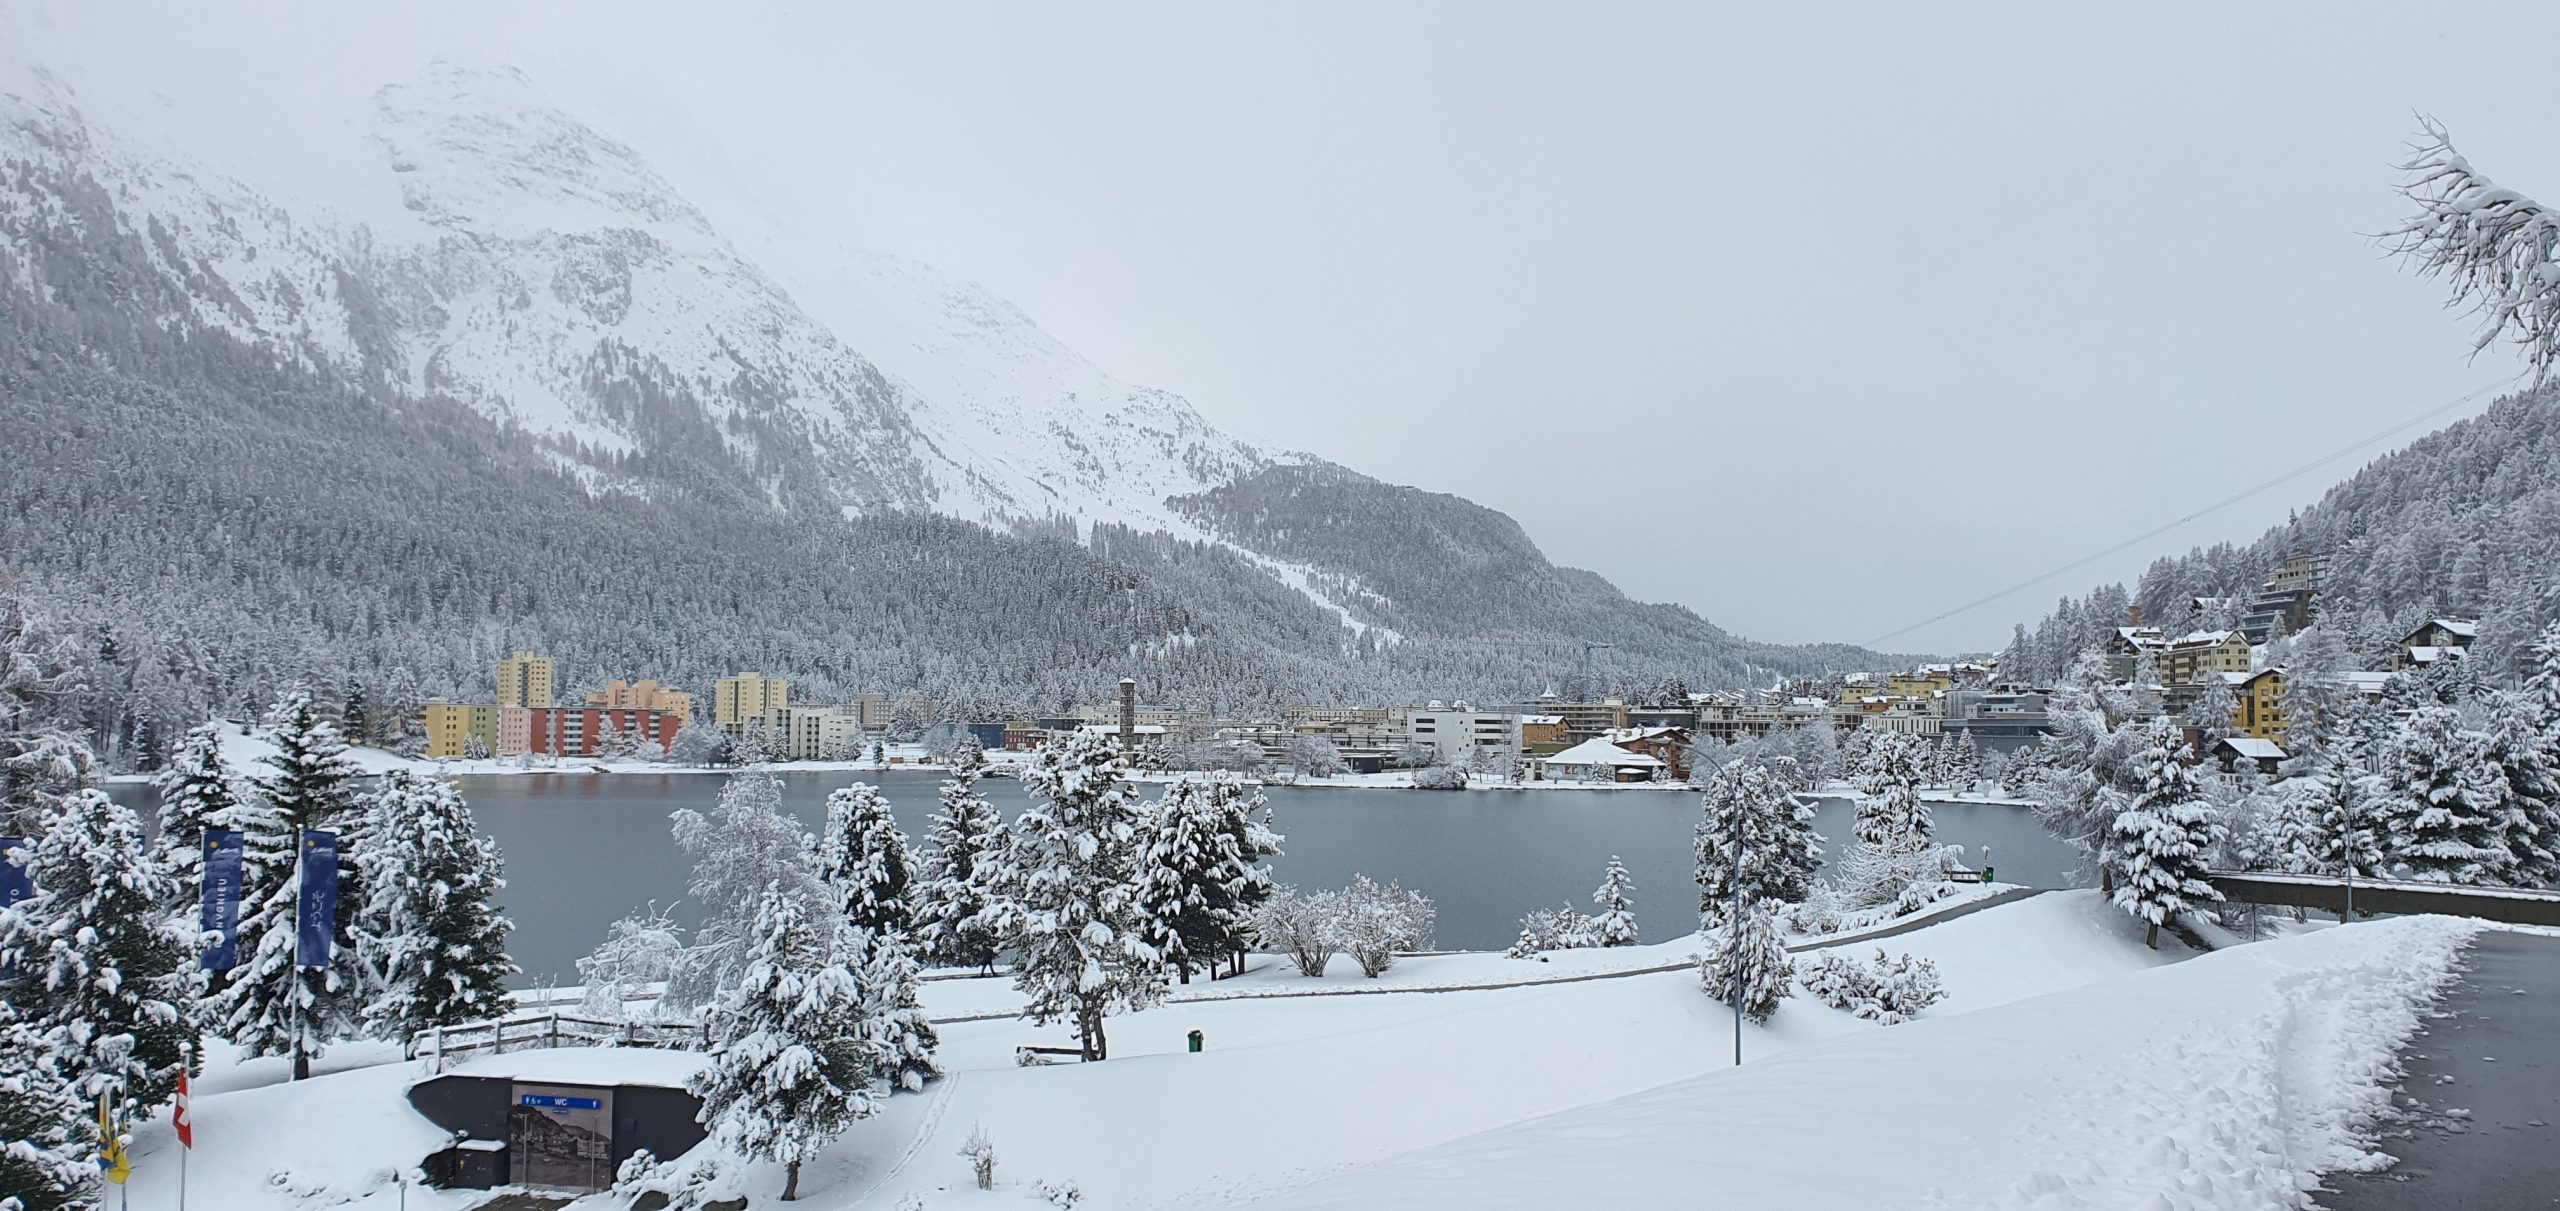 St Moritz, encantadora ciudad